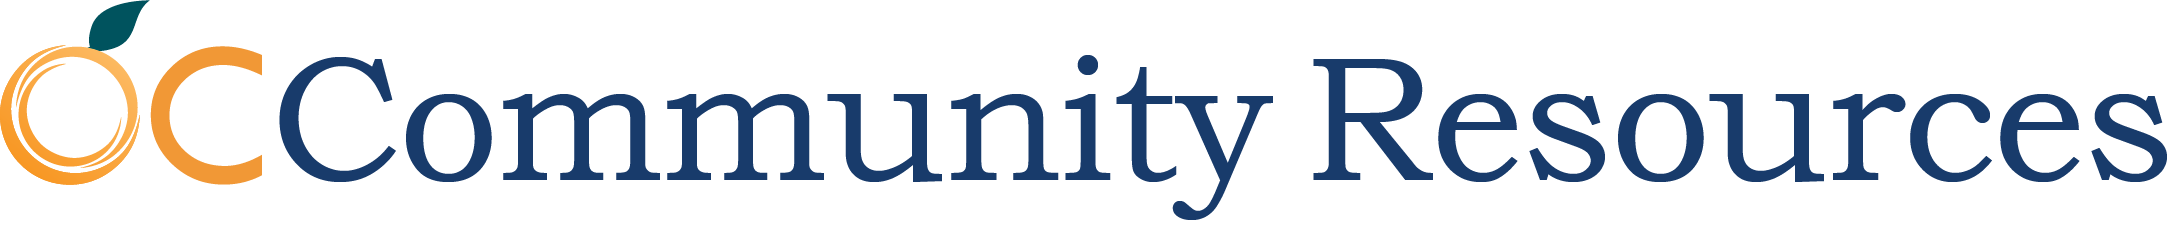 OC Community Resources Logo -- Home